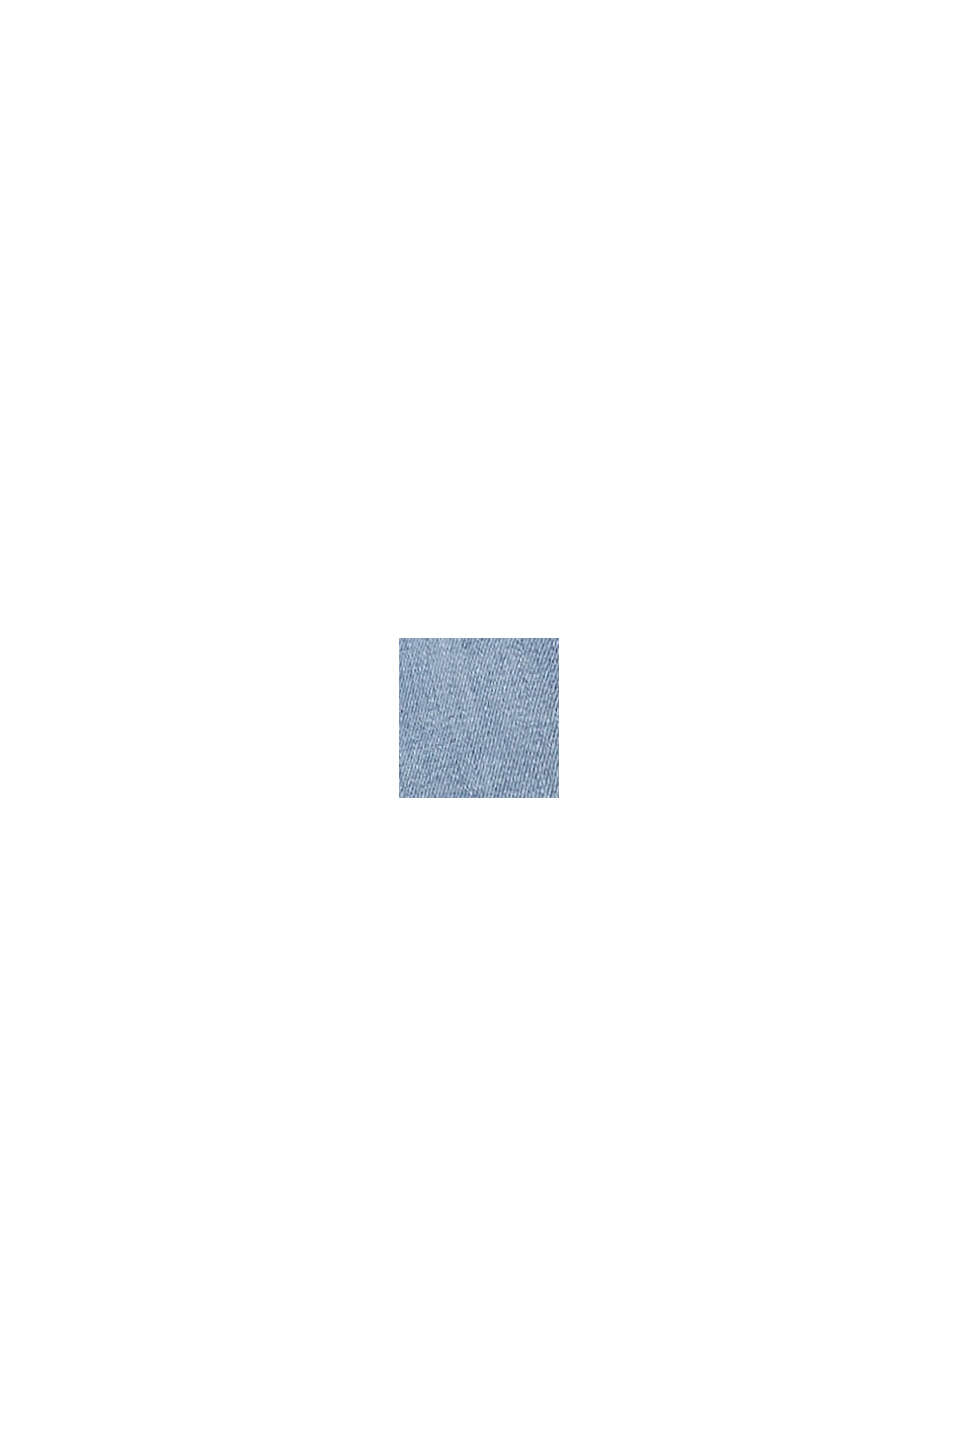 CURVY: strečové džíny s LENZING™ ECOVERO™, BLUE LIGHT WASHED, swatch